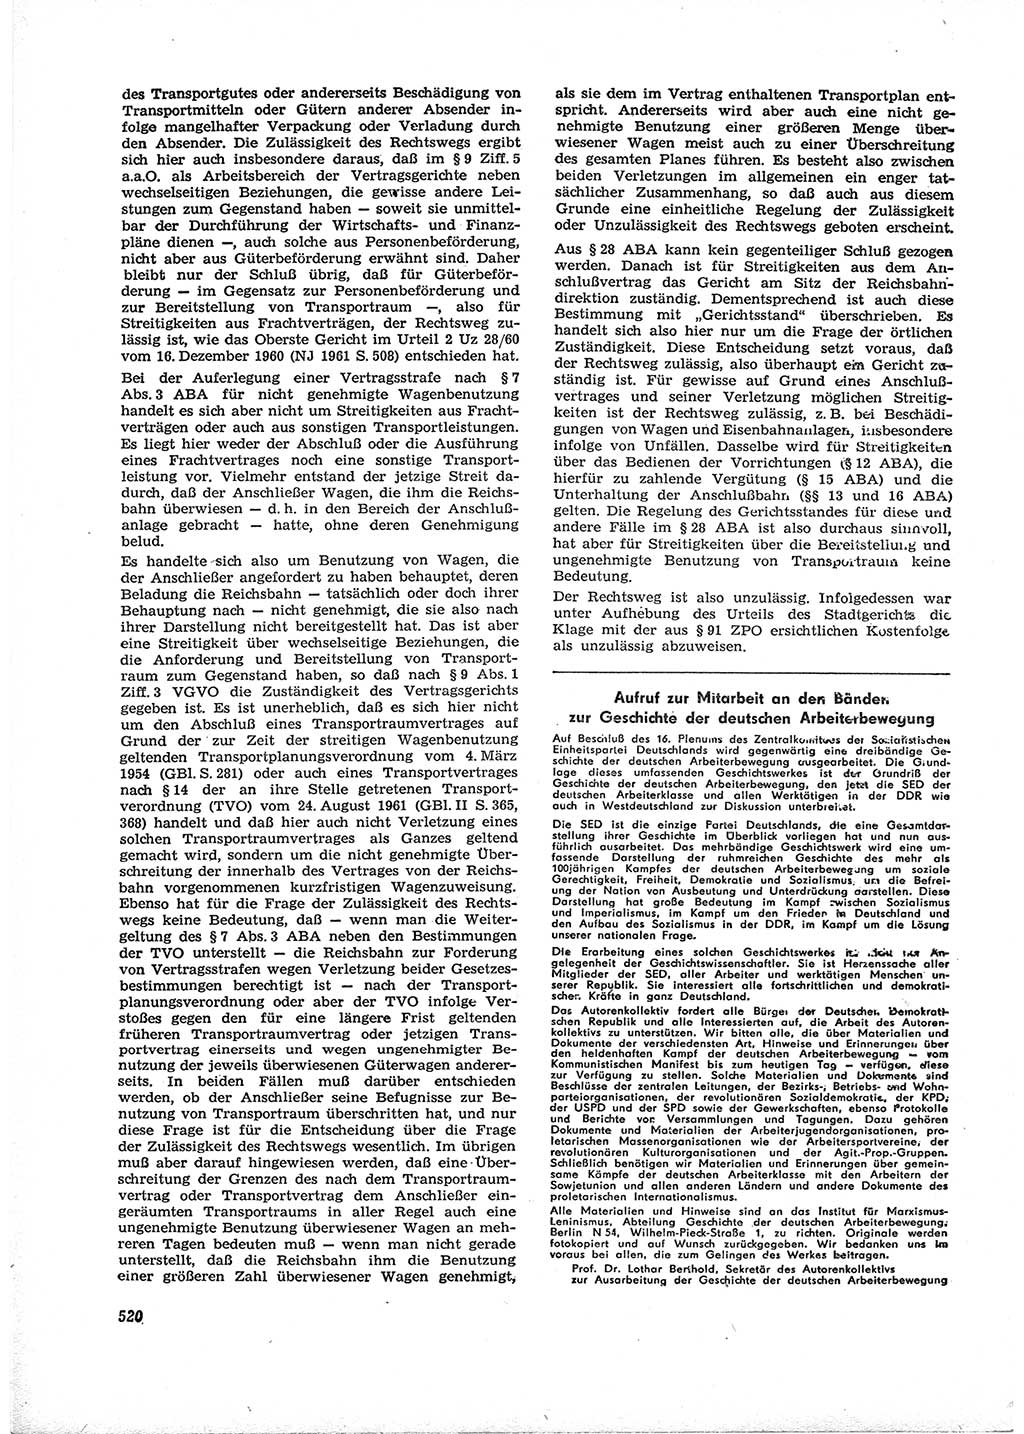 Neue Justiz (NJ), Zeitschrift für Recht und Rechtswissenschaft [Deutsche Demokratische Republik (DDR)], 16. Jahrgang 1962, Seite 520 (NJ DDR 1962, S. 520)